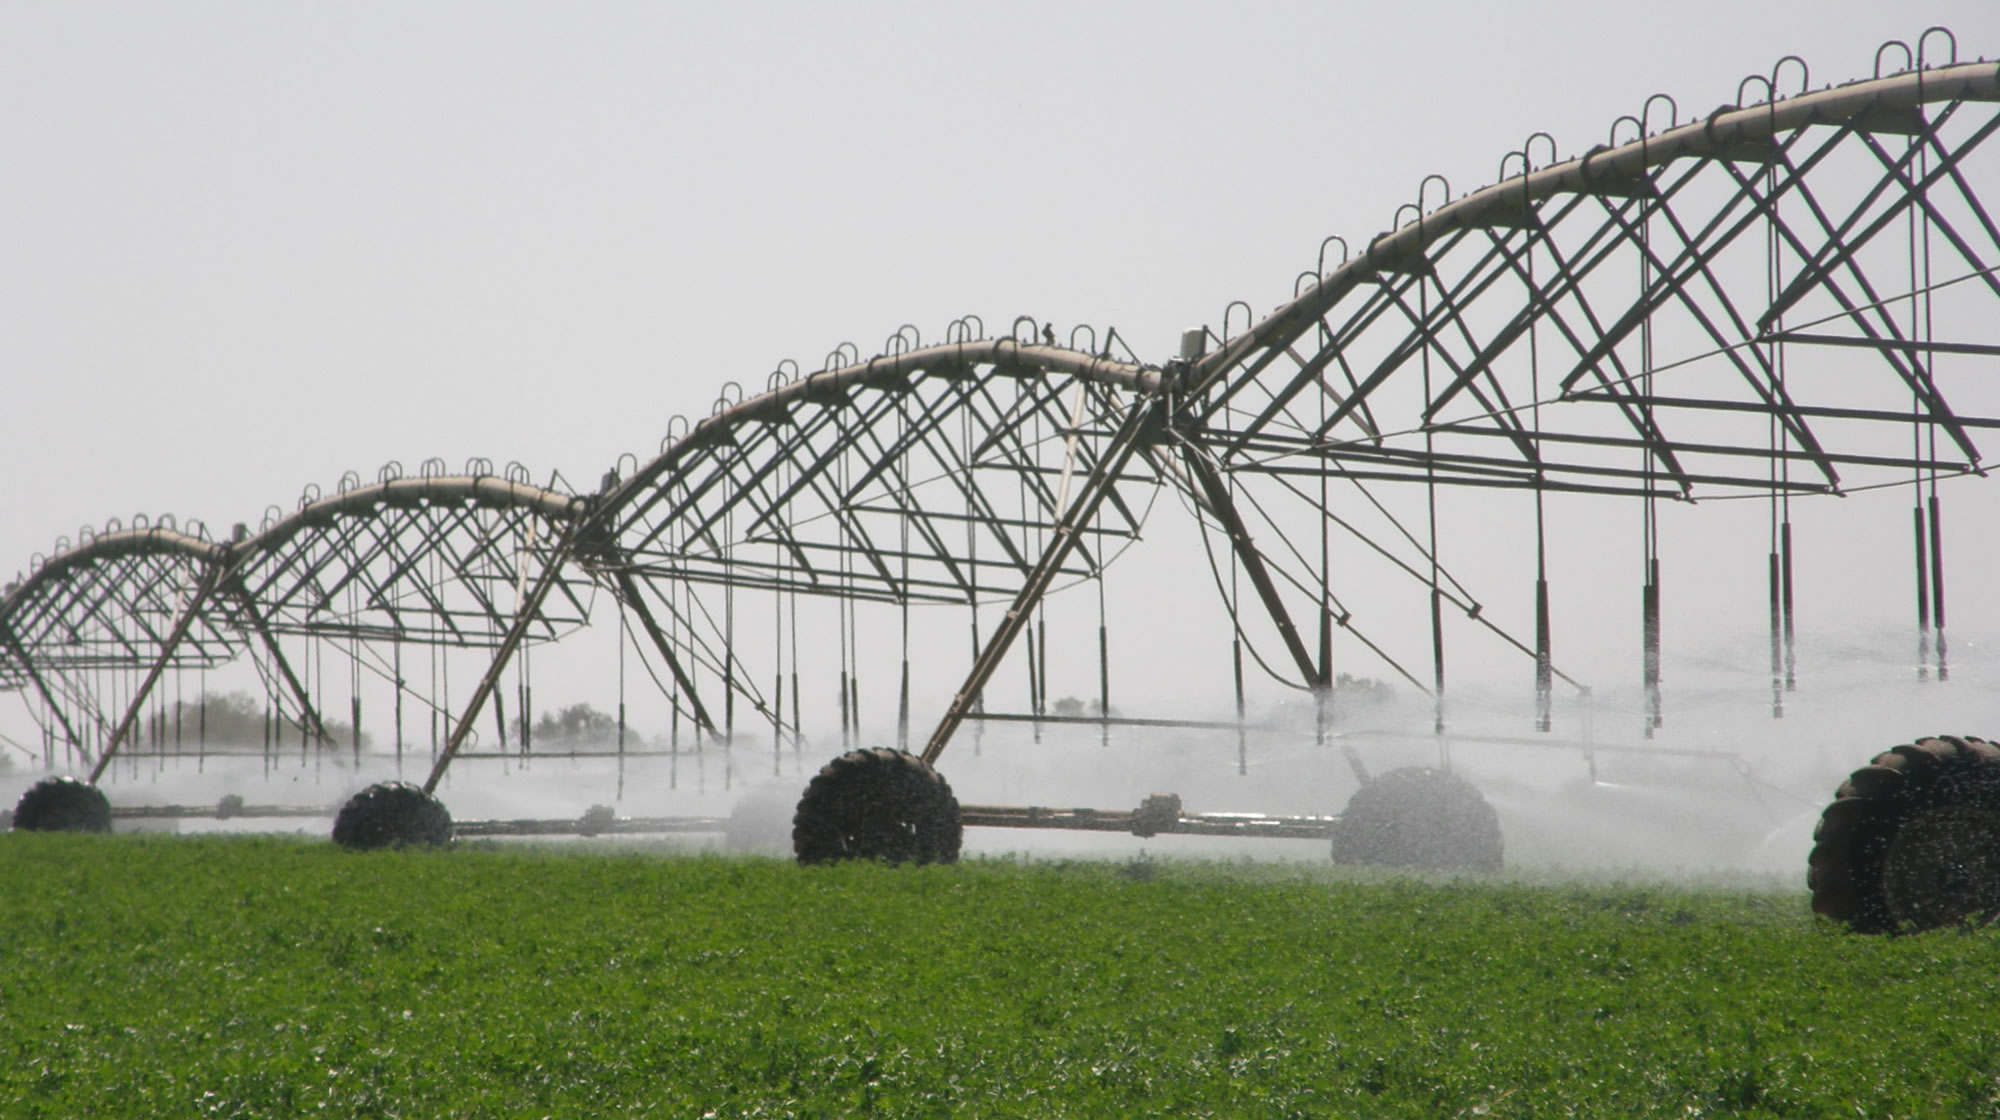 Nom : irrigation-equipment-pivot.jpg
Affichages : 95
Taille : 304,1 Ko